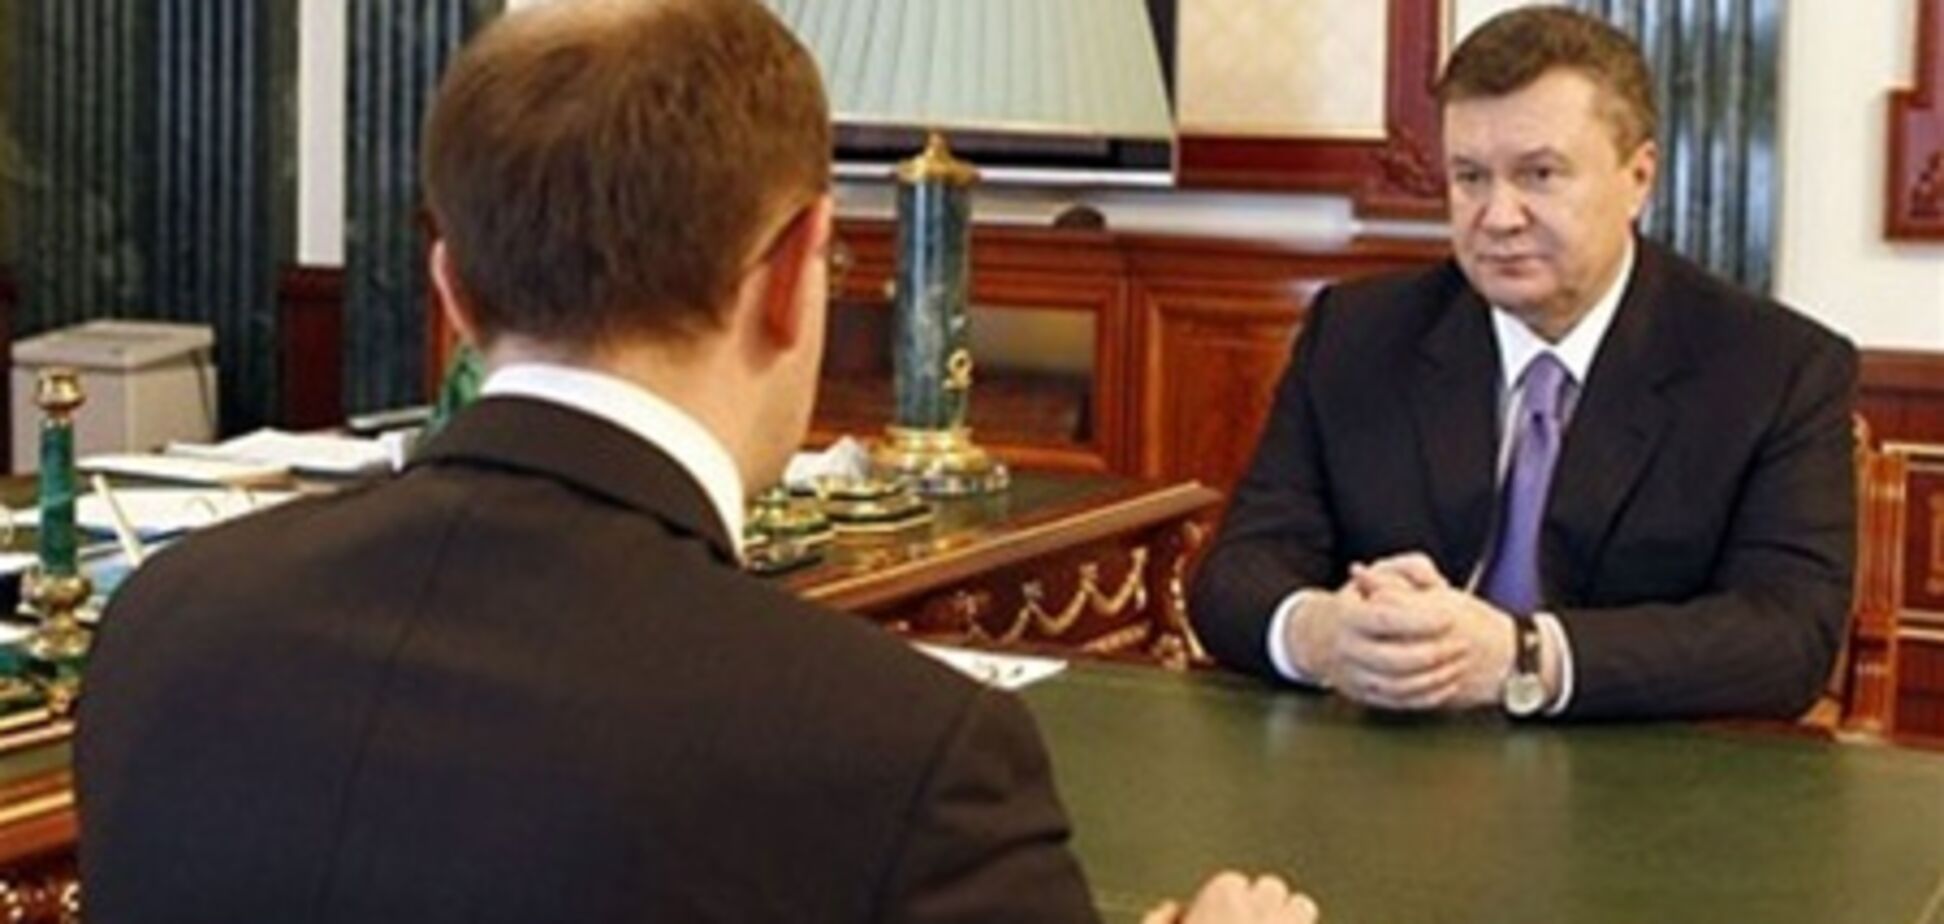 Яценюк уверен, что Тимошенко теперь поедет лечиться за границу